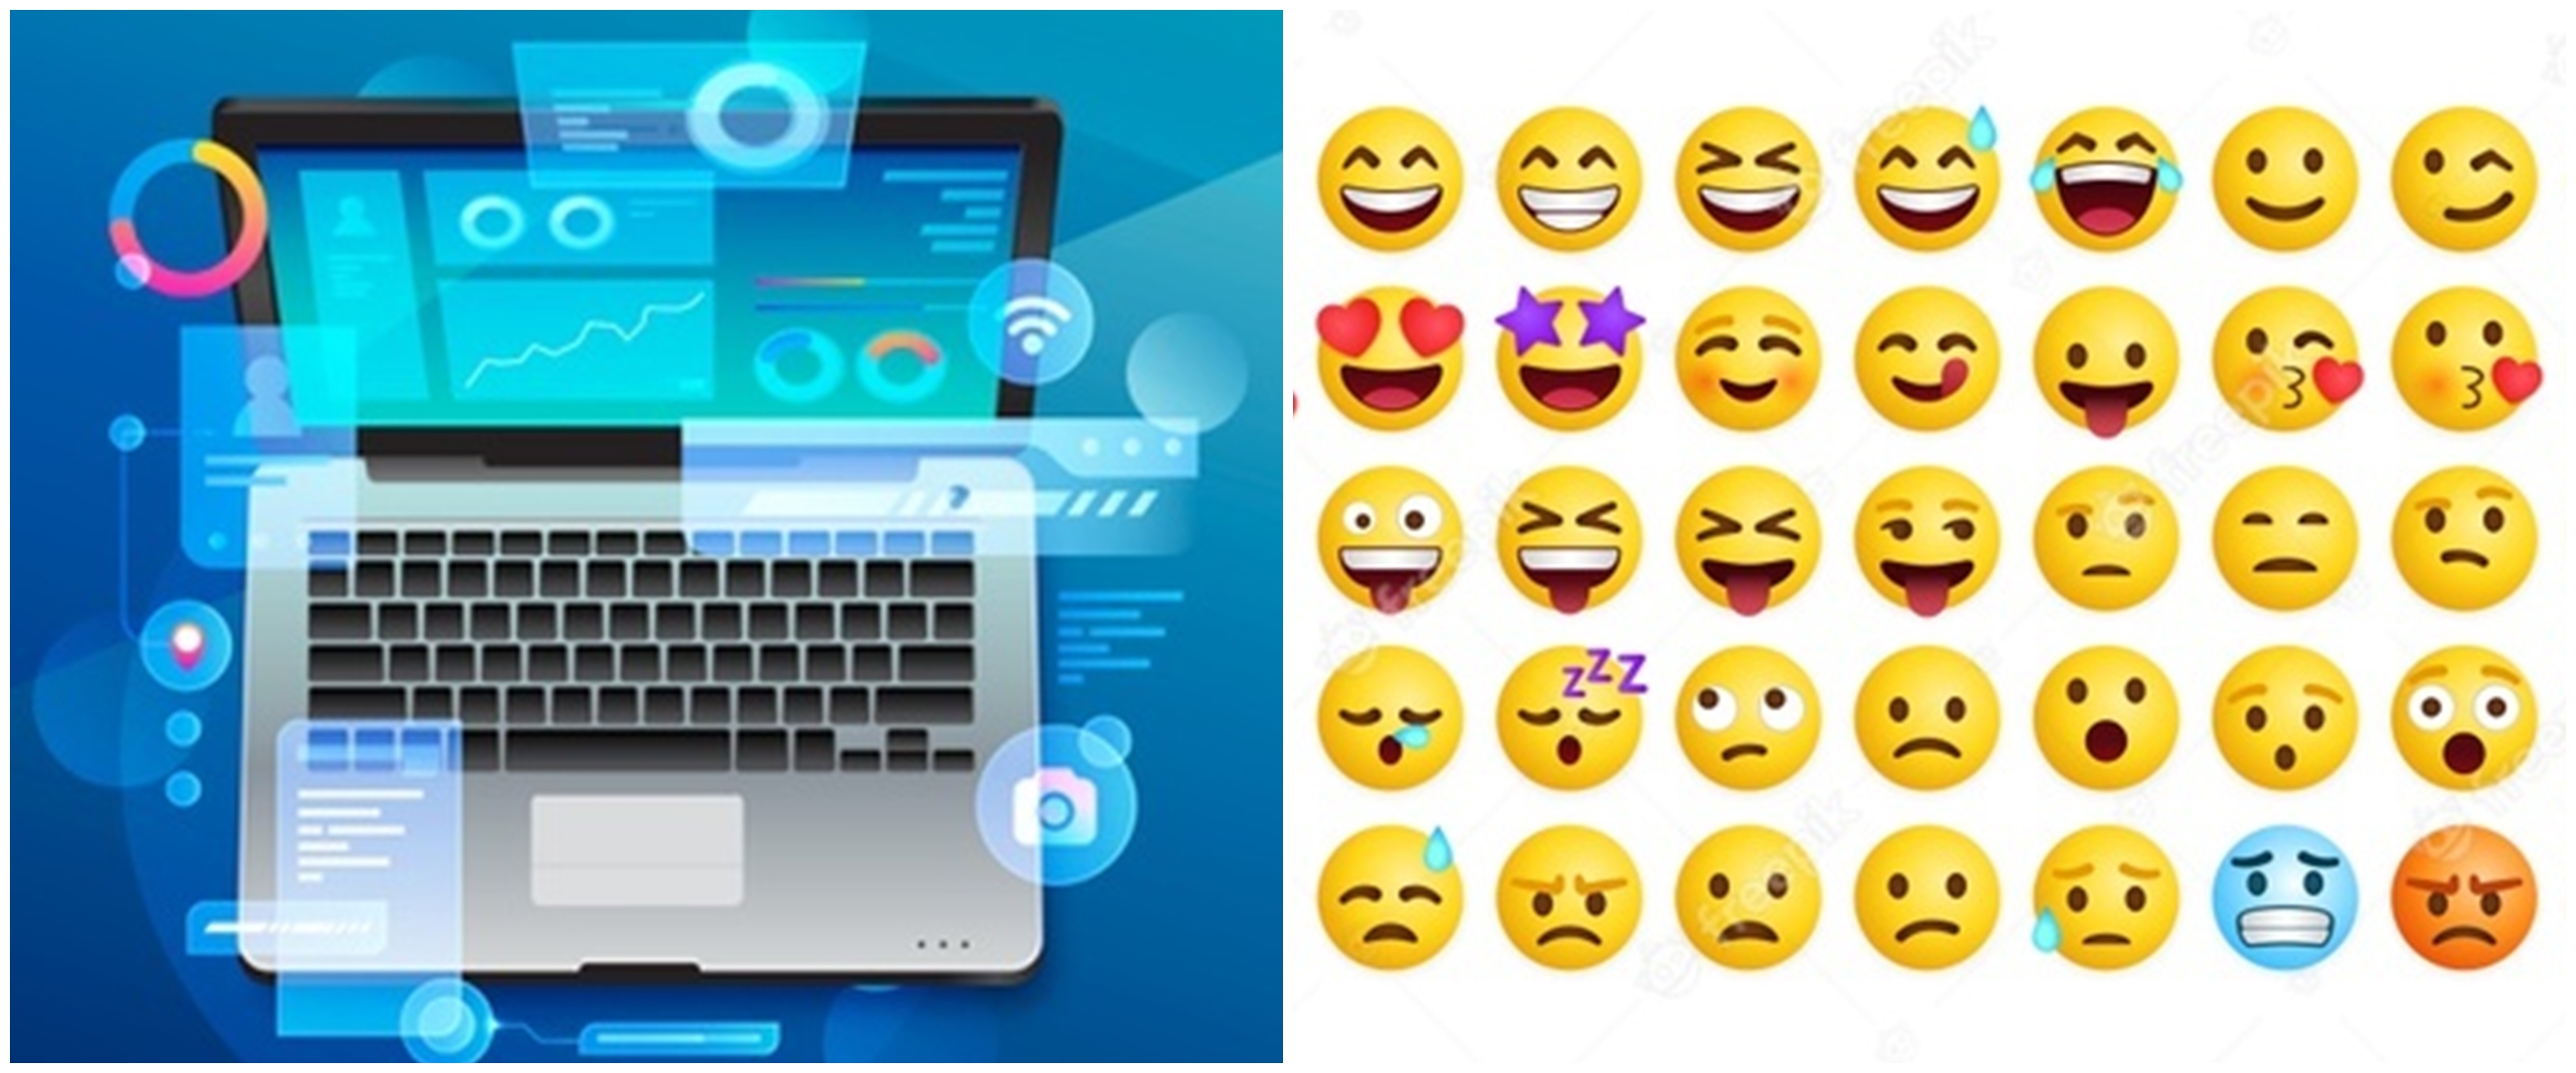 Cara jitu menampilkan Emoji di Windows 10, Windows 8.1, dan Windows 7